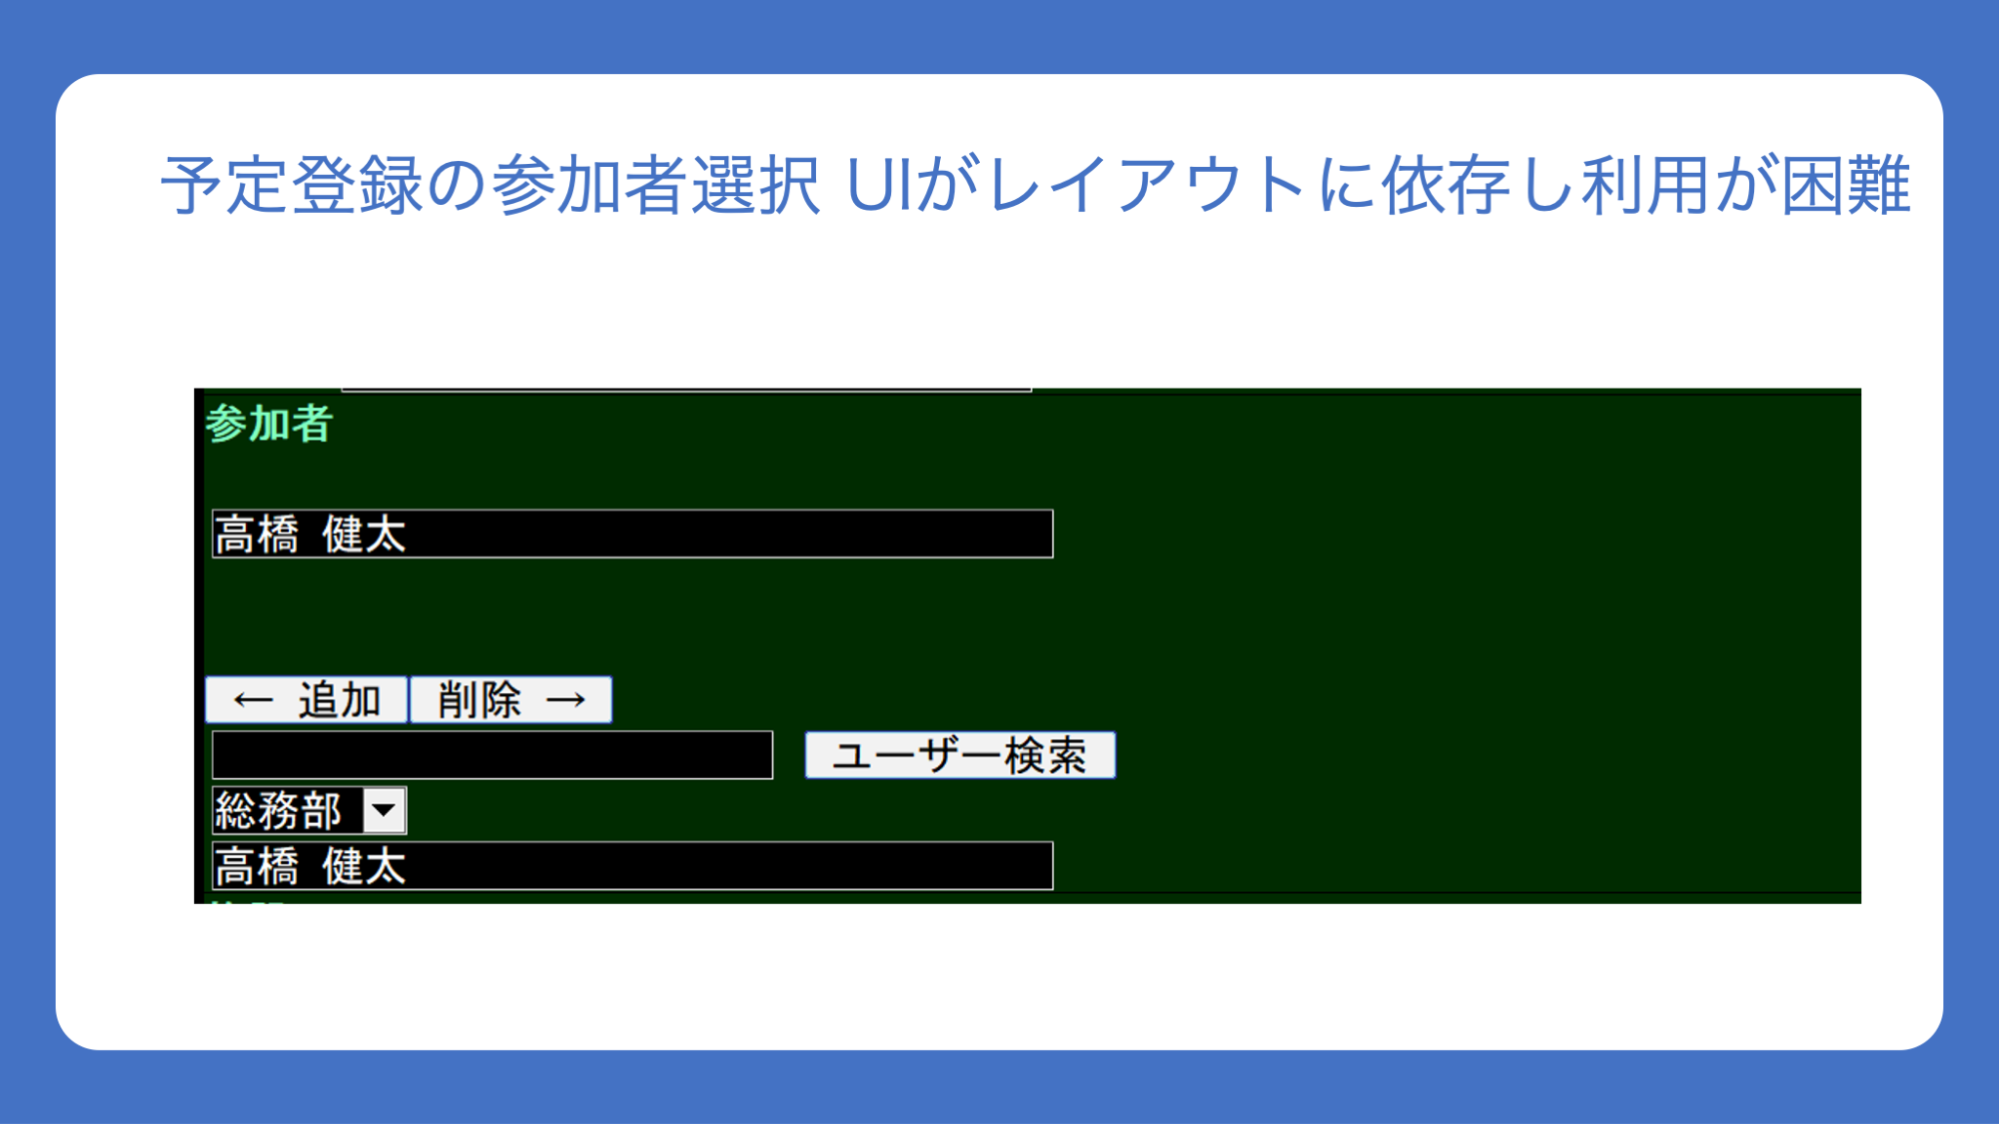 スライド：「予定登録の参加者選択 UIがレイアウトに依存し利用が困難」と書かれている。音声ブラウザに表示された予定の登録画面で、参加者を選ぶ「← 追加」「削除 →」というボタンはあるが、左右には何も表示されていない状態のスクリーンショットも配置されている。